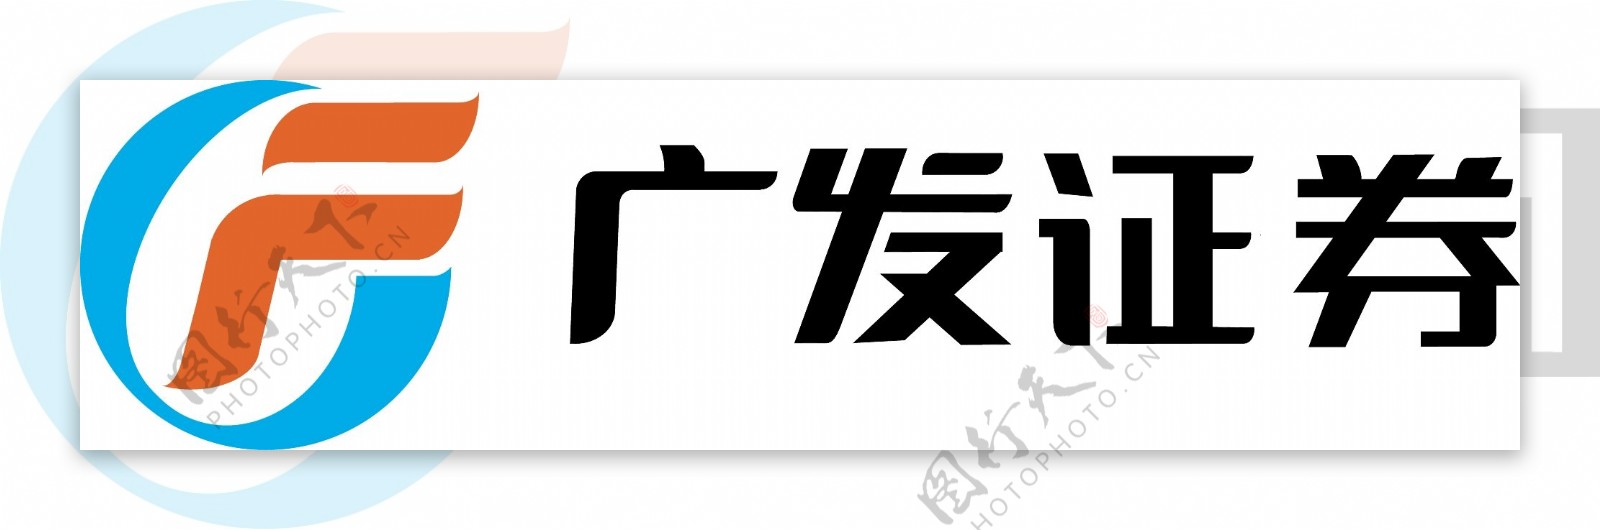 广发证劵logo图片